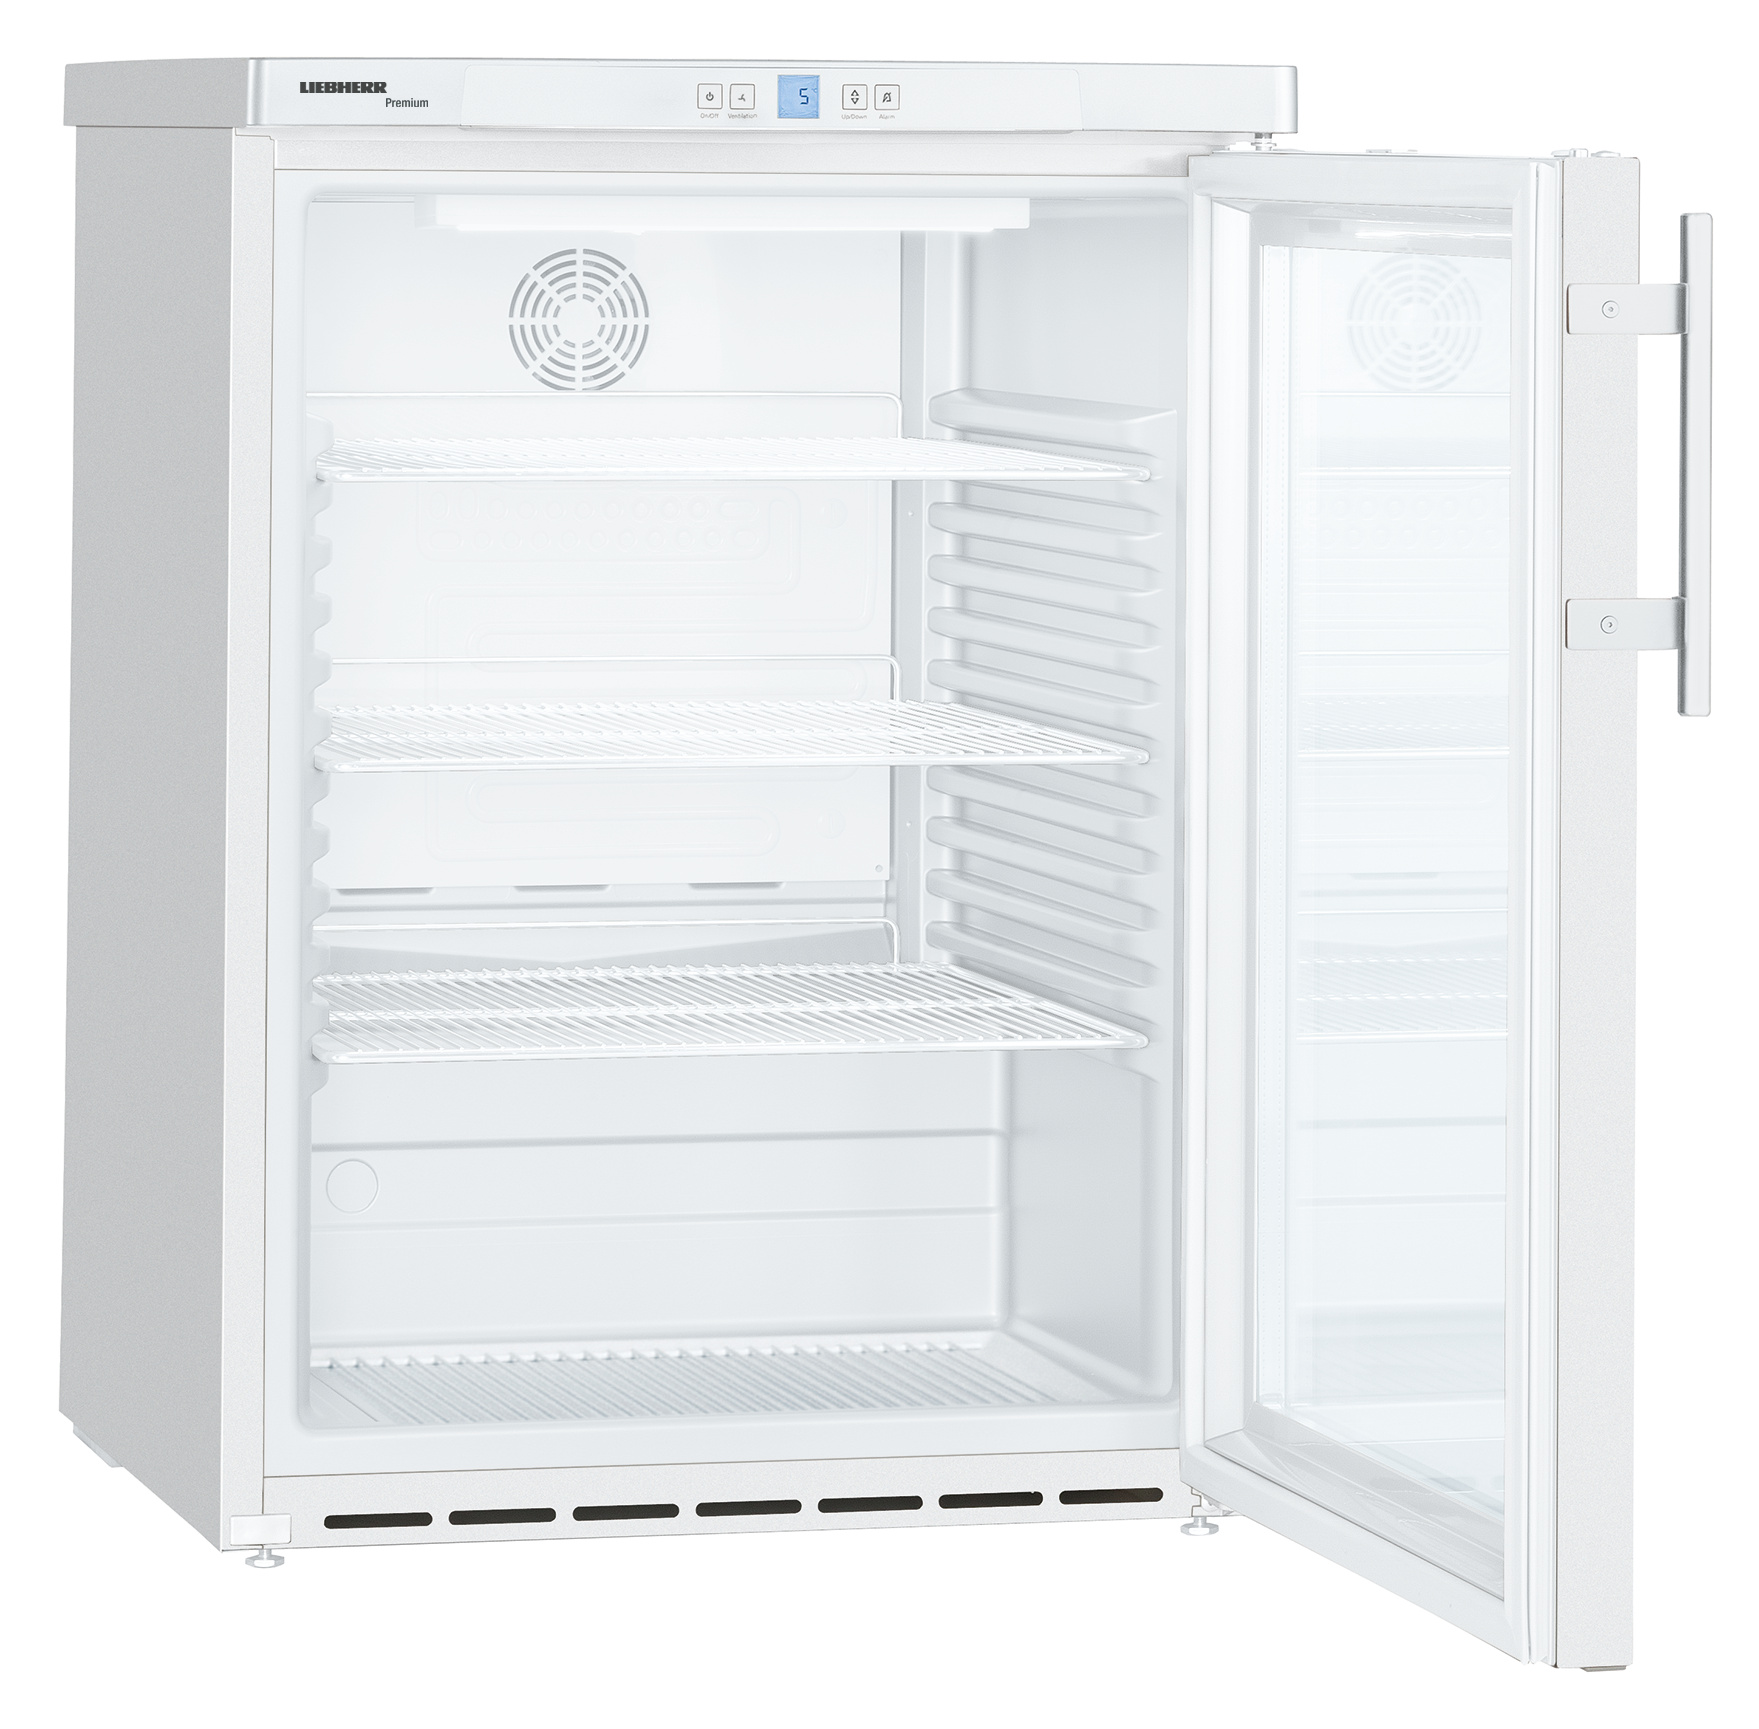 141 literes pult alá helyezhető hűtőszekrény, ventilációs hűtéssel, üvegajtós, fehér